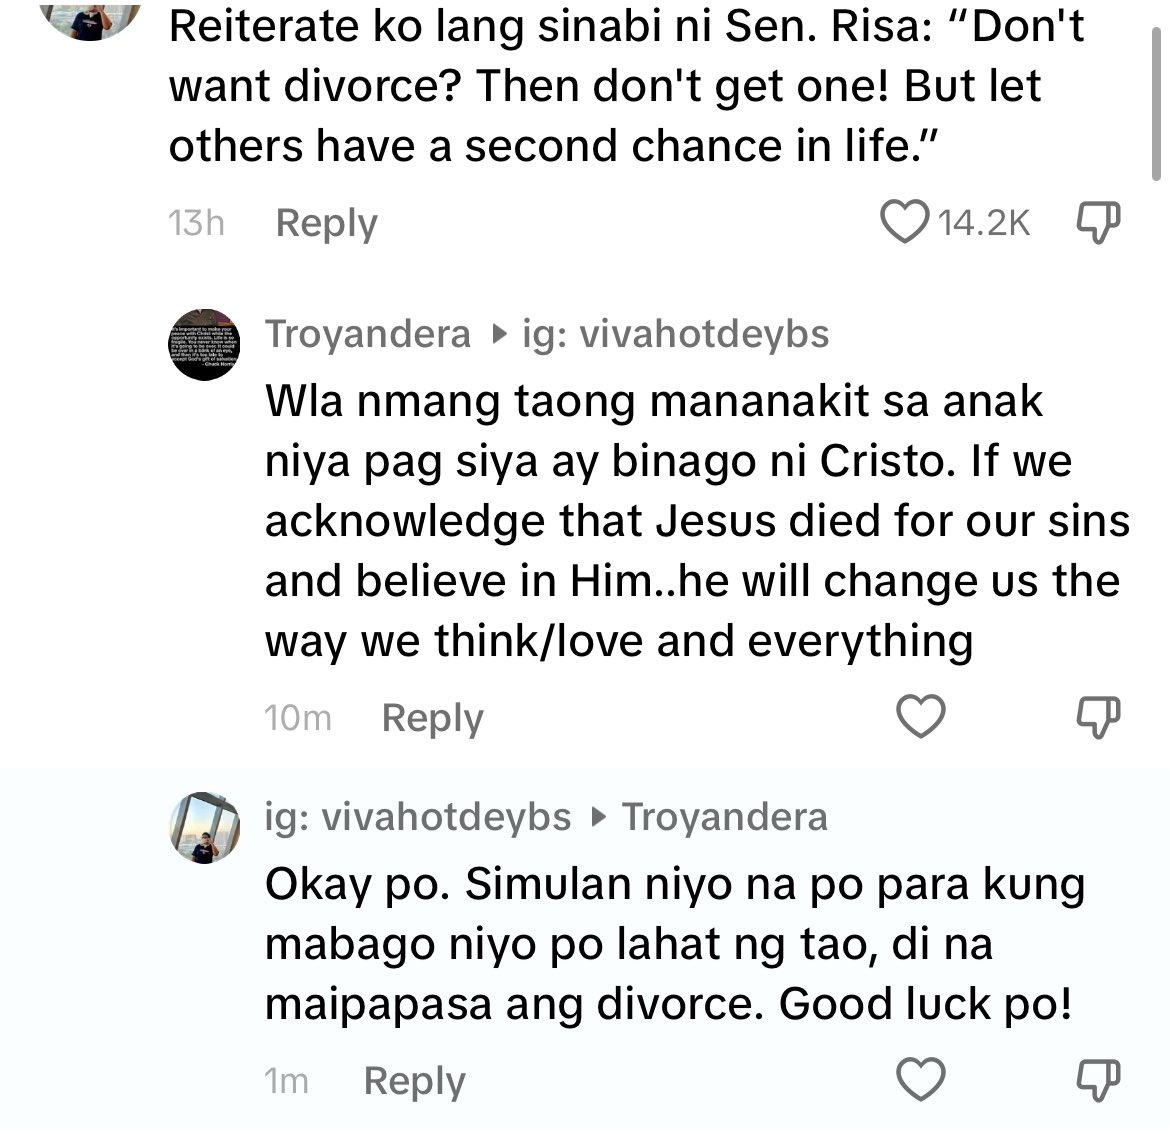 Ang dami kong time para sagutin lahat ng mga anti-divorce comments sa TikTok nkklk ‘tong mga pro-marriage/pro-Bible pero hudas ang ugali outside socmed